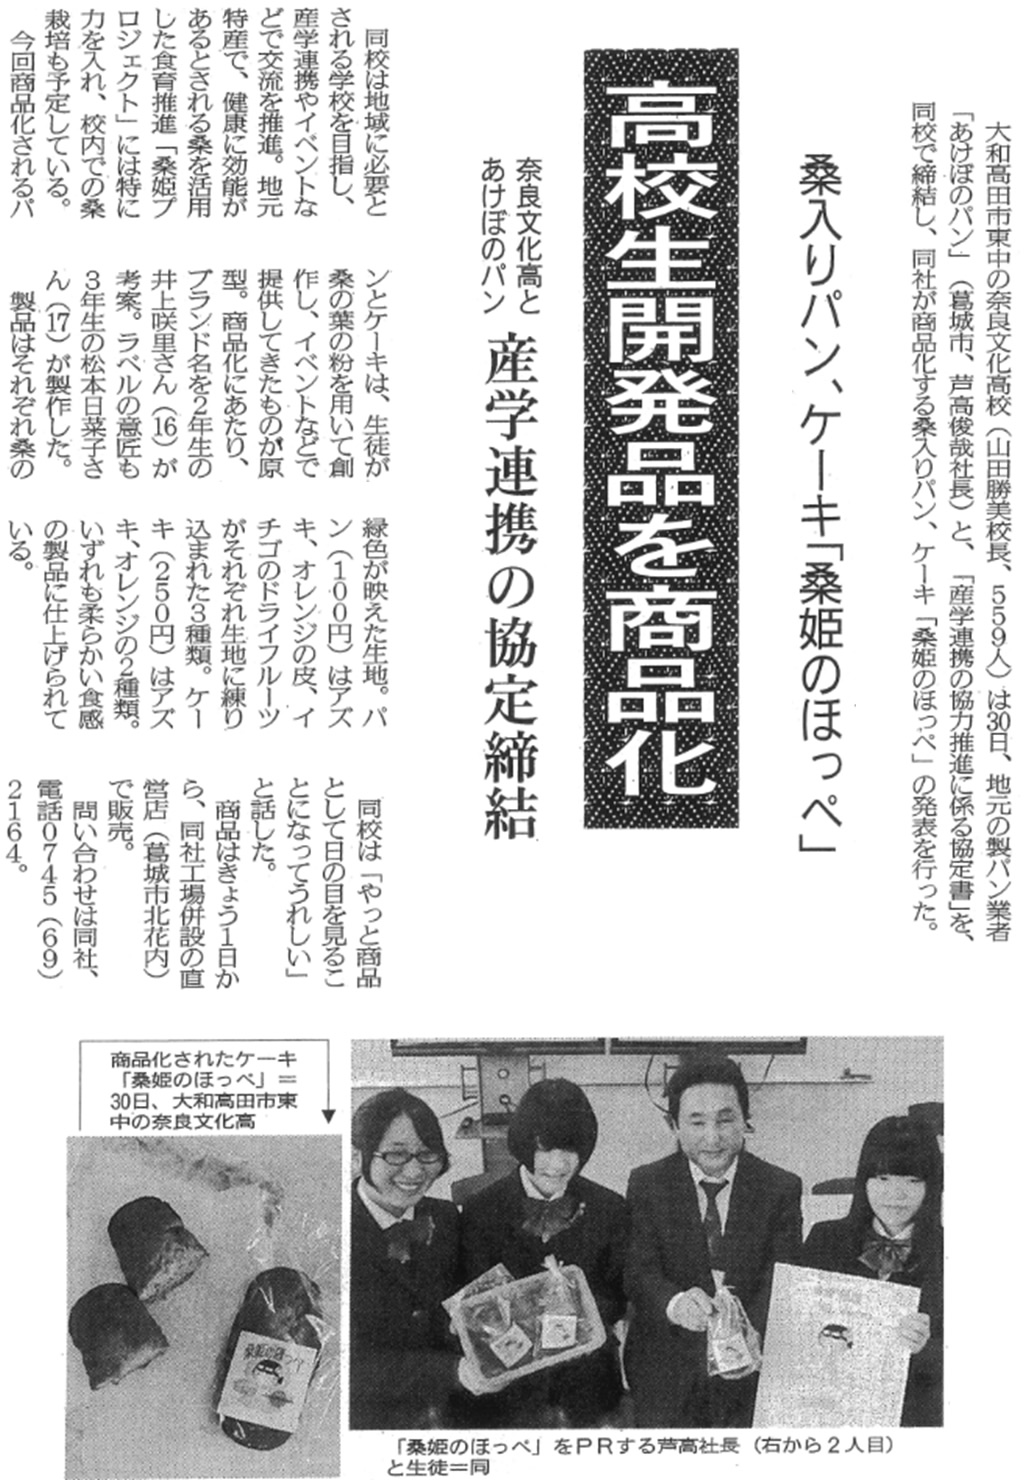 奈良新聞「高校生開発品を商品化」